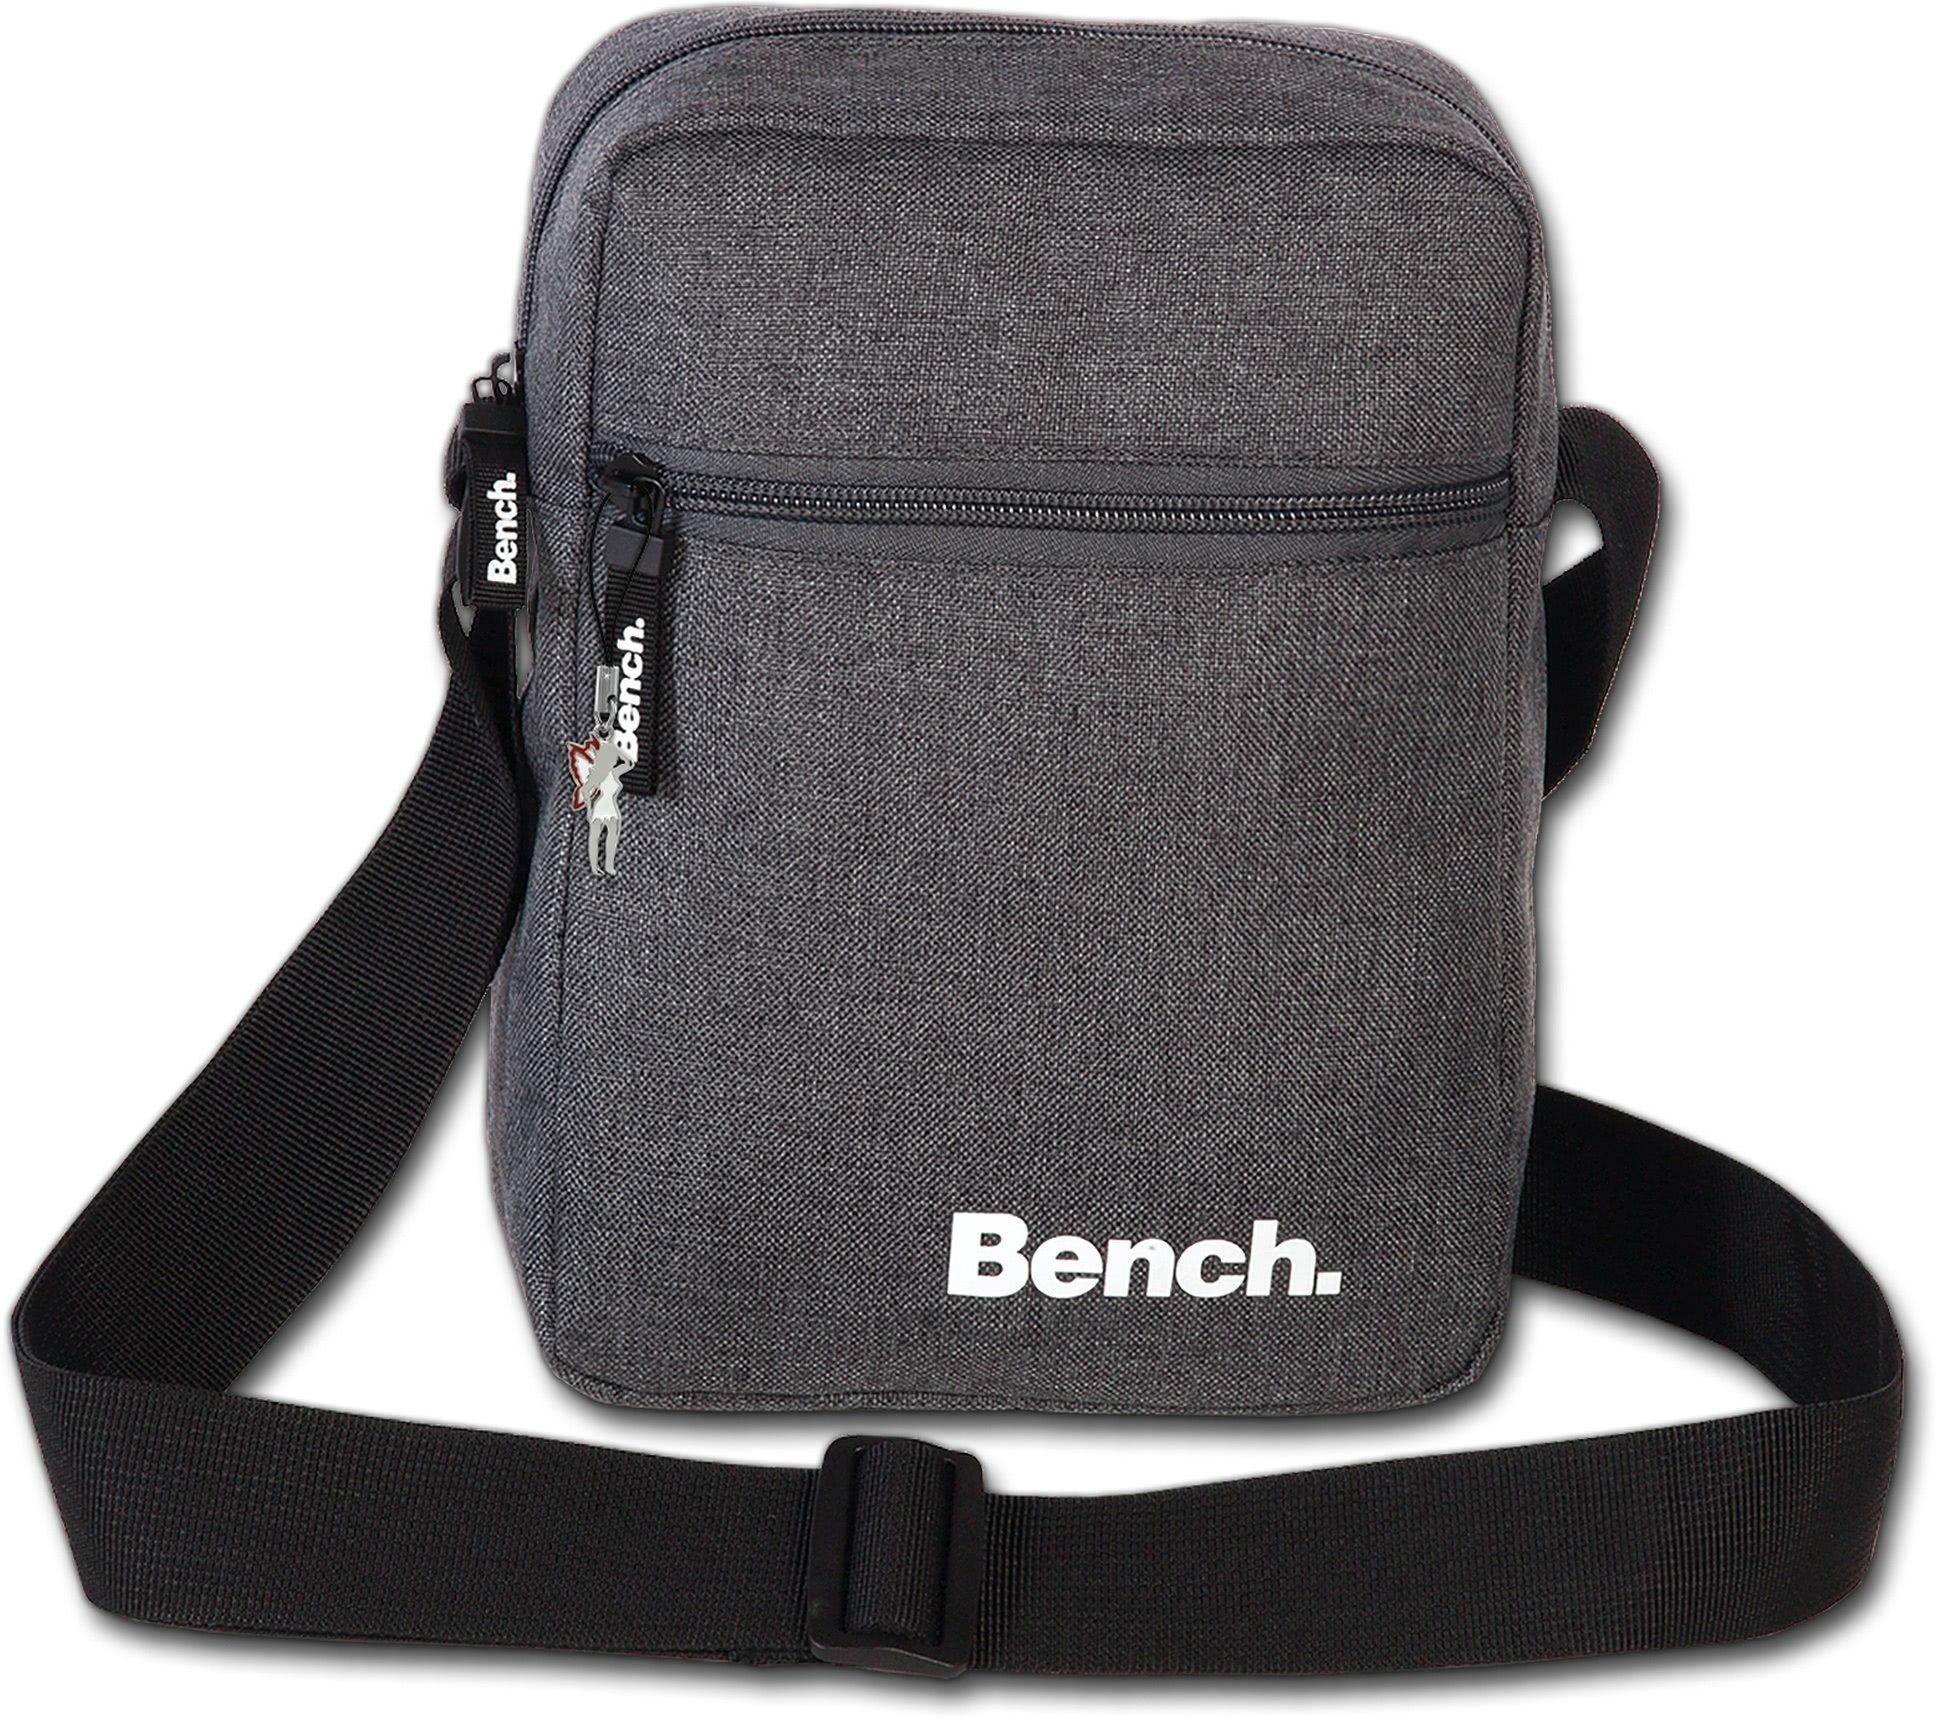 Bench. Umhängetasche Bench sportliche Umhängetasche grau (Umhängetasche,  Umhängetasche), Unisex Tasche Polyester grau, mittel 17x23x8cm